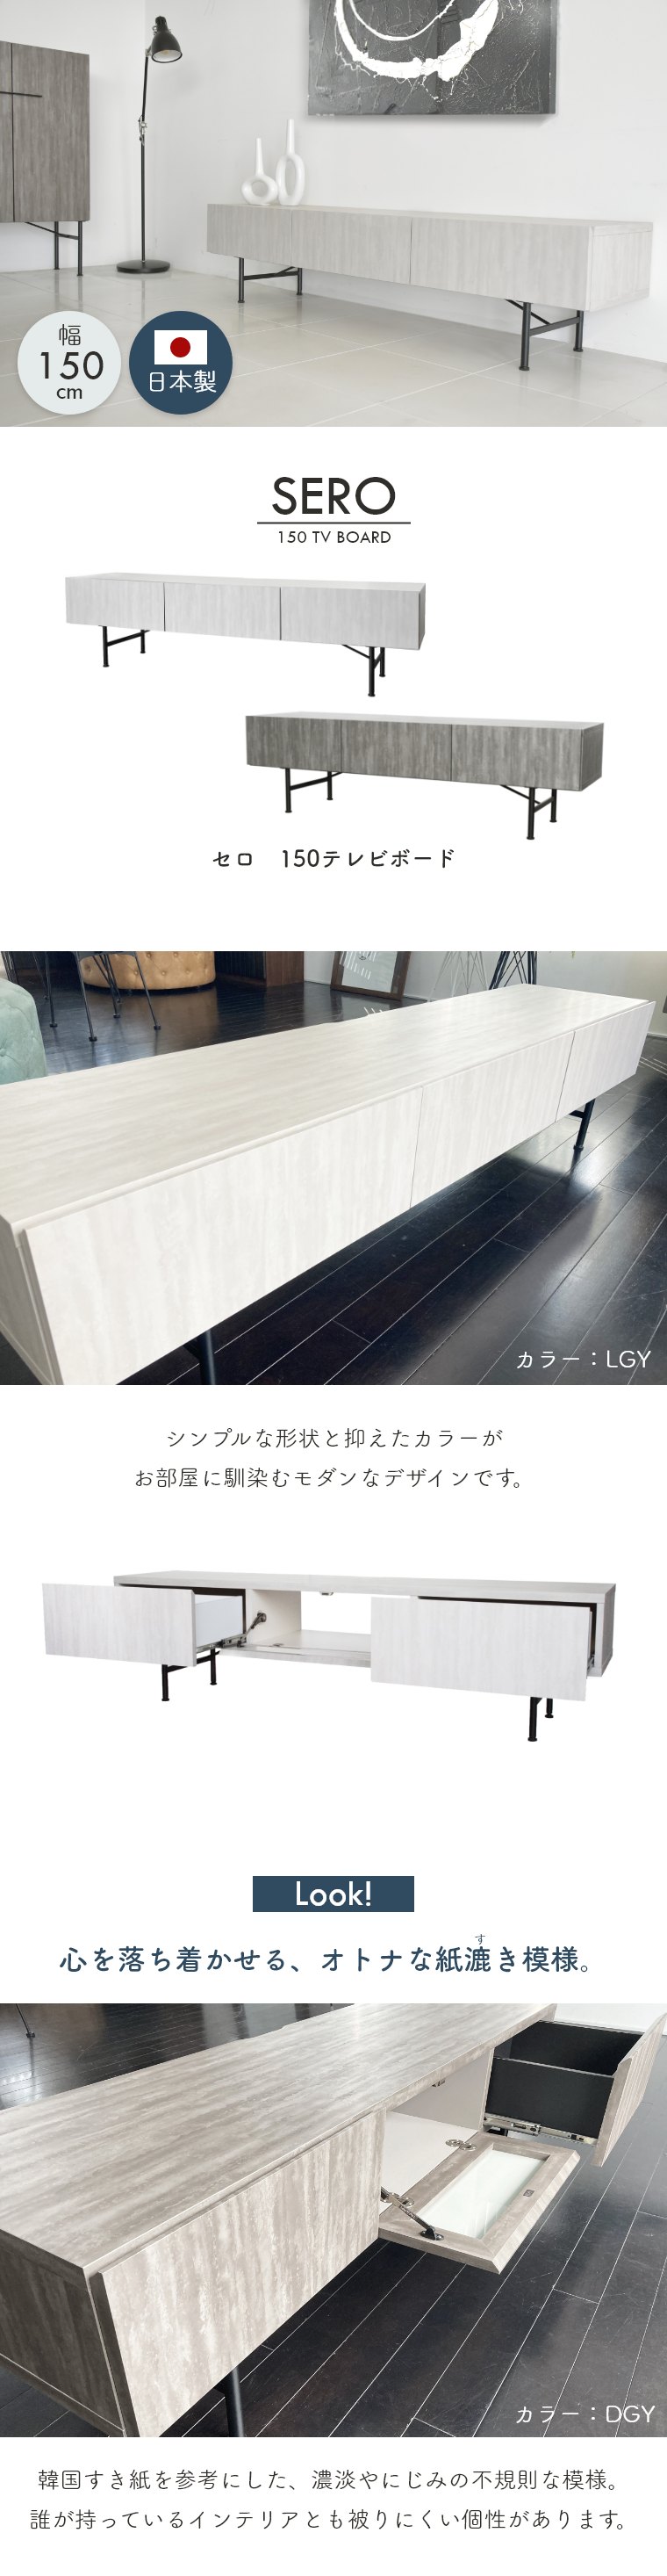 テレビボード テレビ台 セロ SERO 幅150cm ガルト 日本製 国産 木製 グレー 無地 シンプル